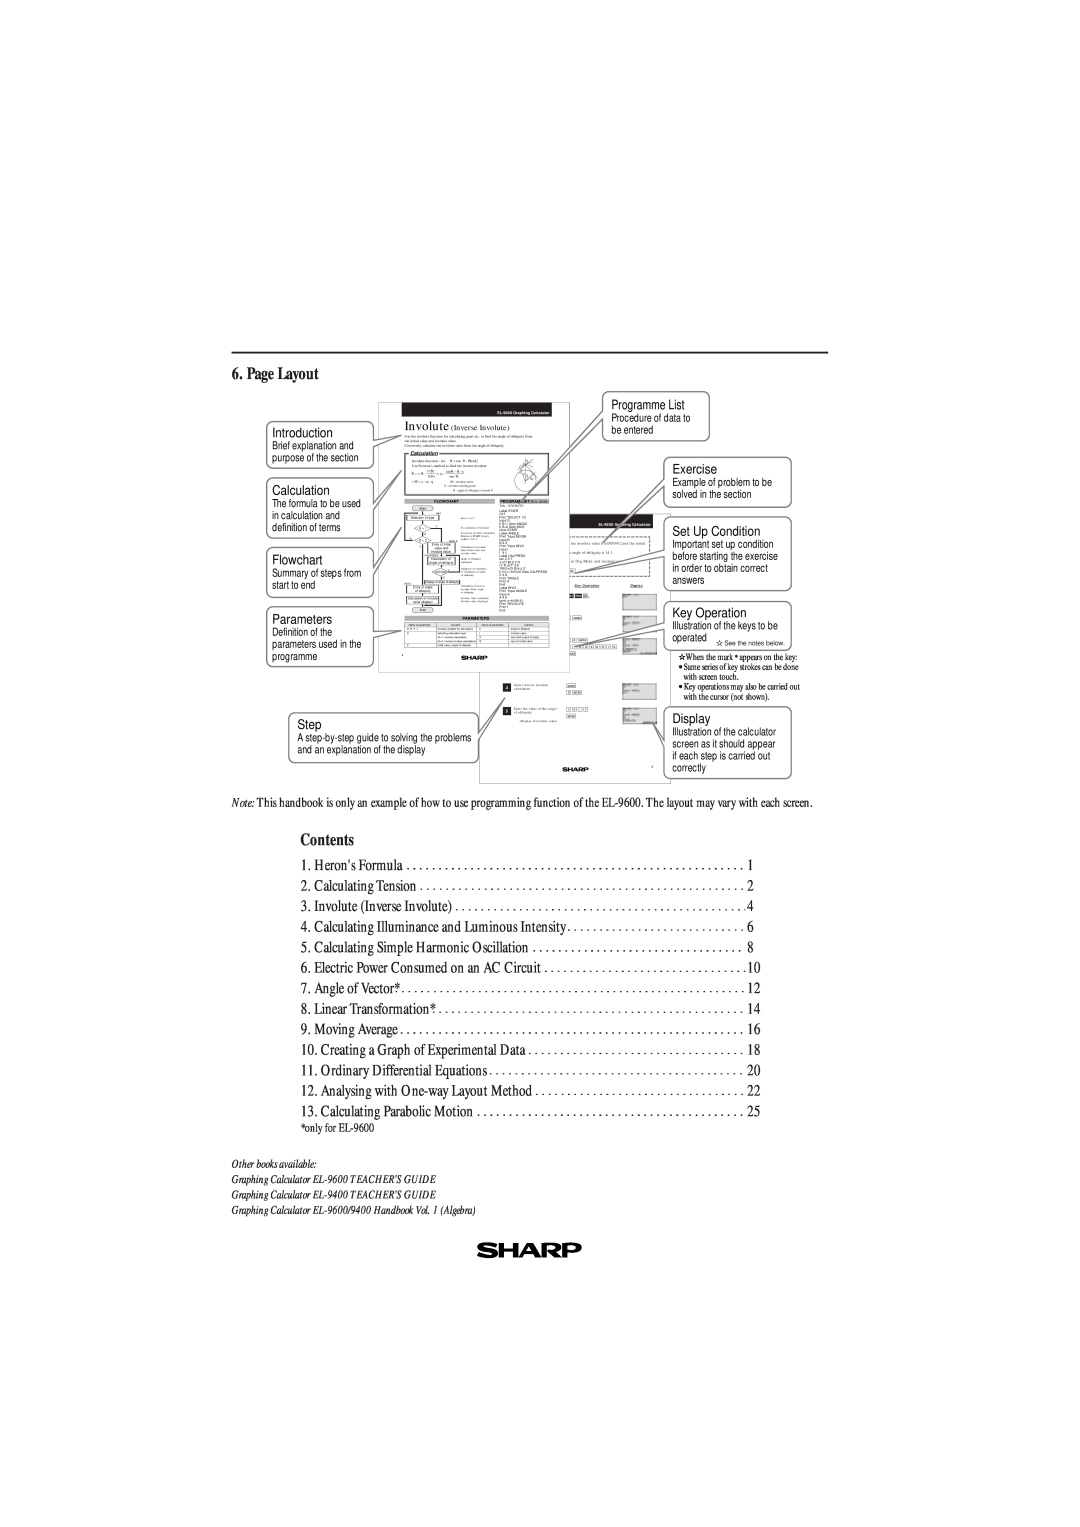 Sharp EL-9600, EL-9400 manual Page Layout, Contents 